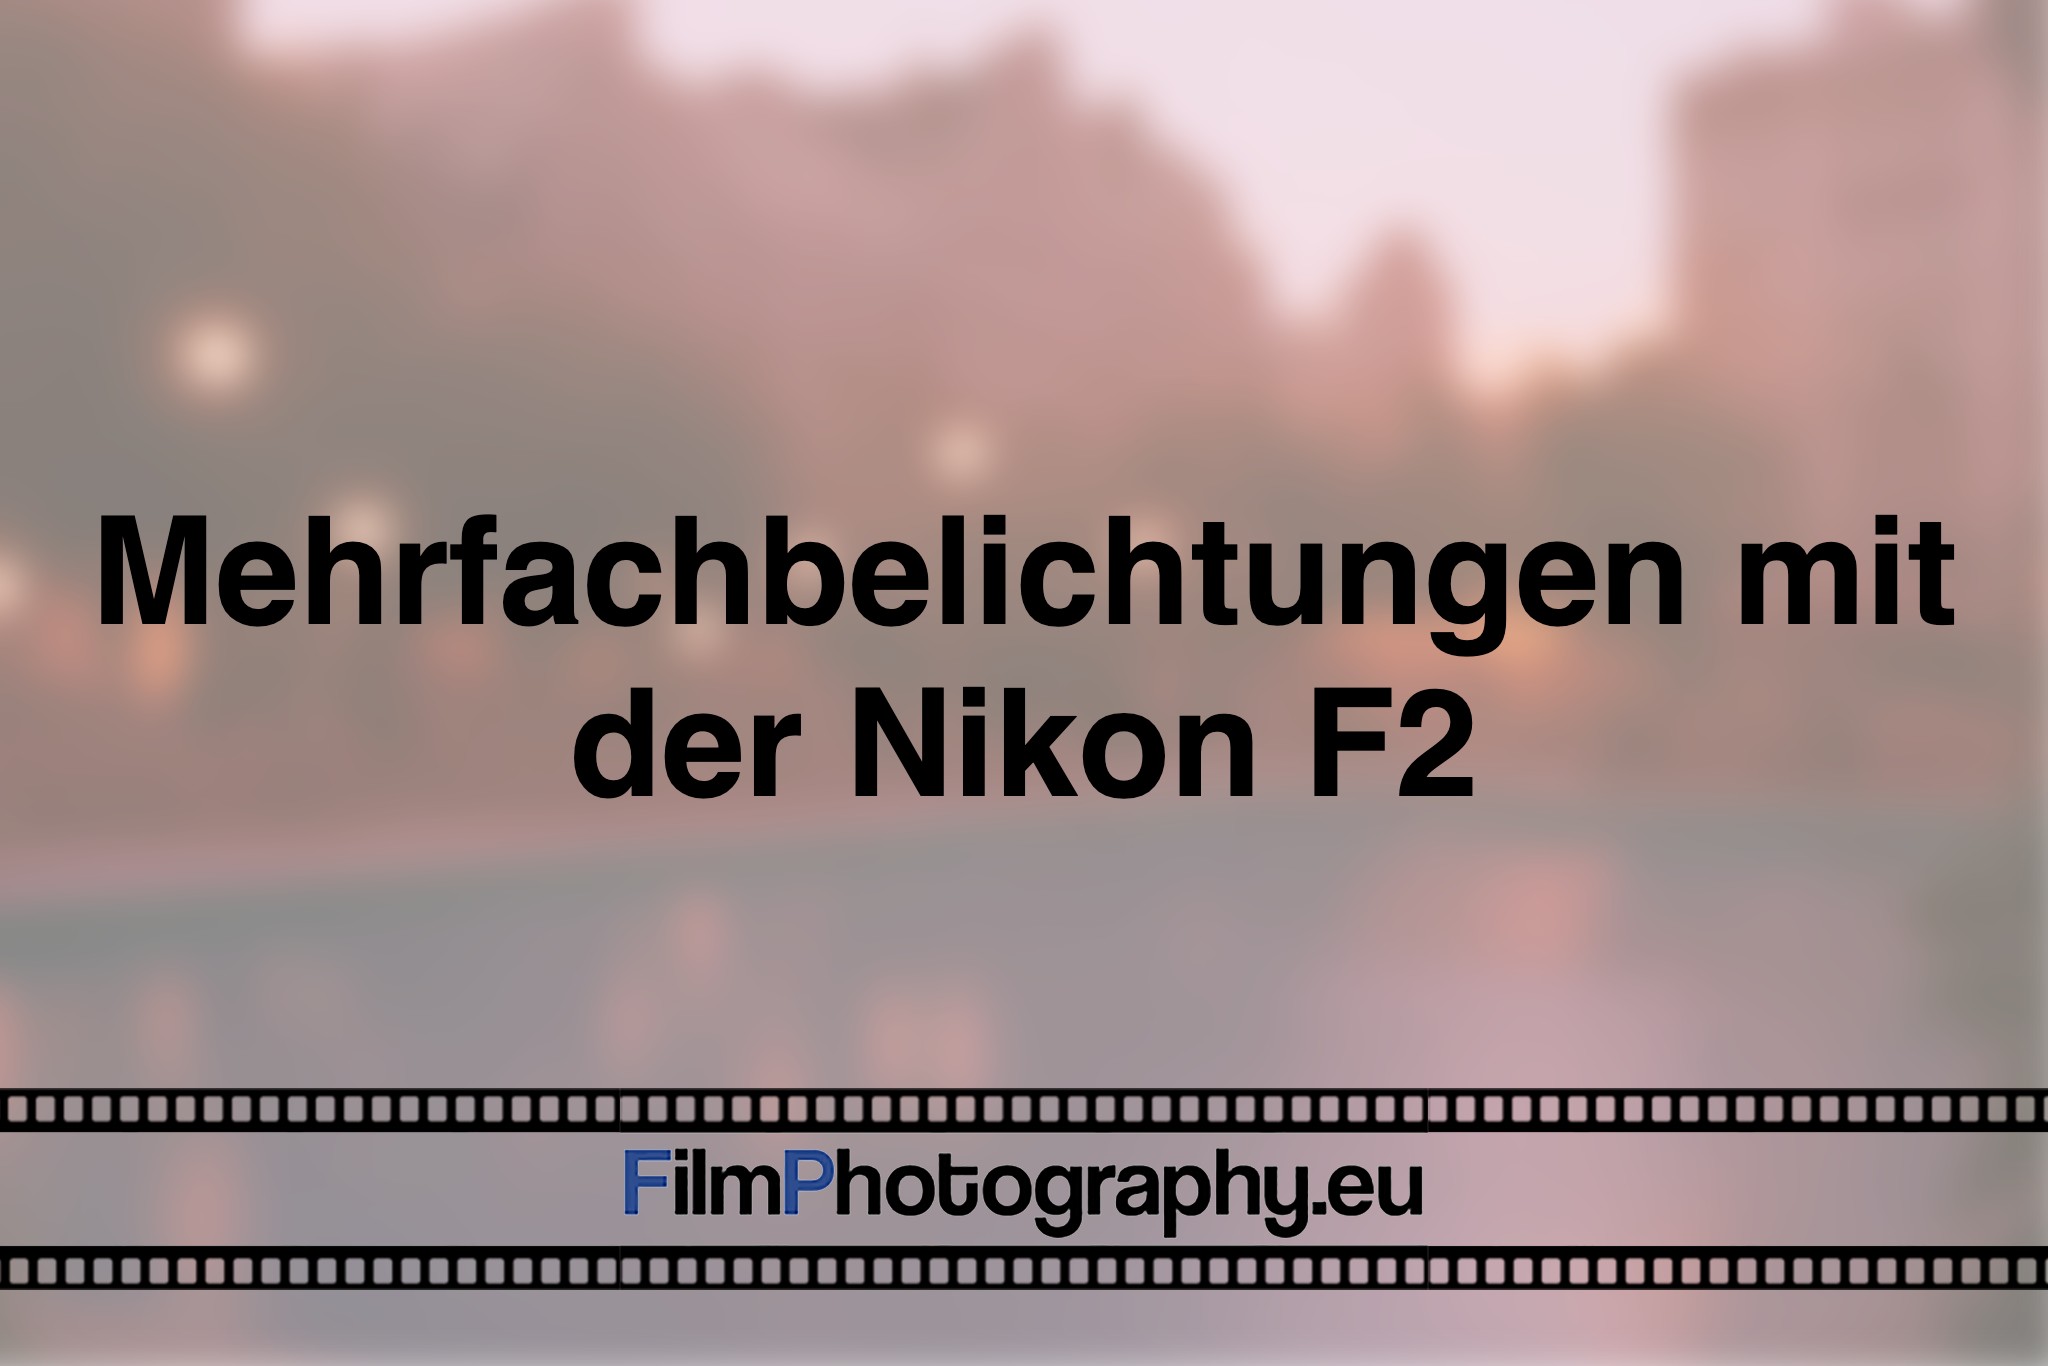 mehrfachbelichtungen-mit-der-nikon-f2-photo-bnv